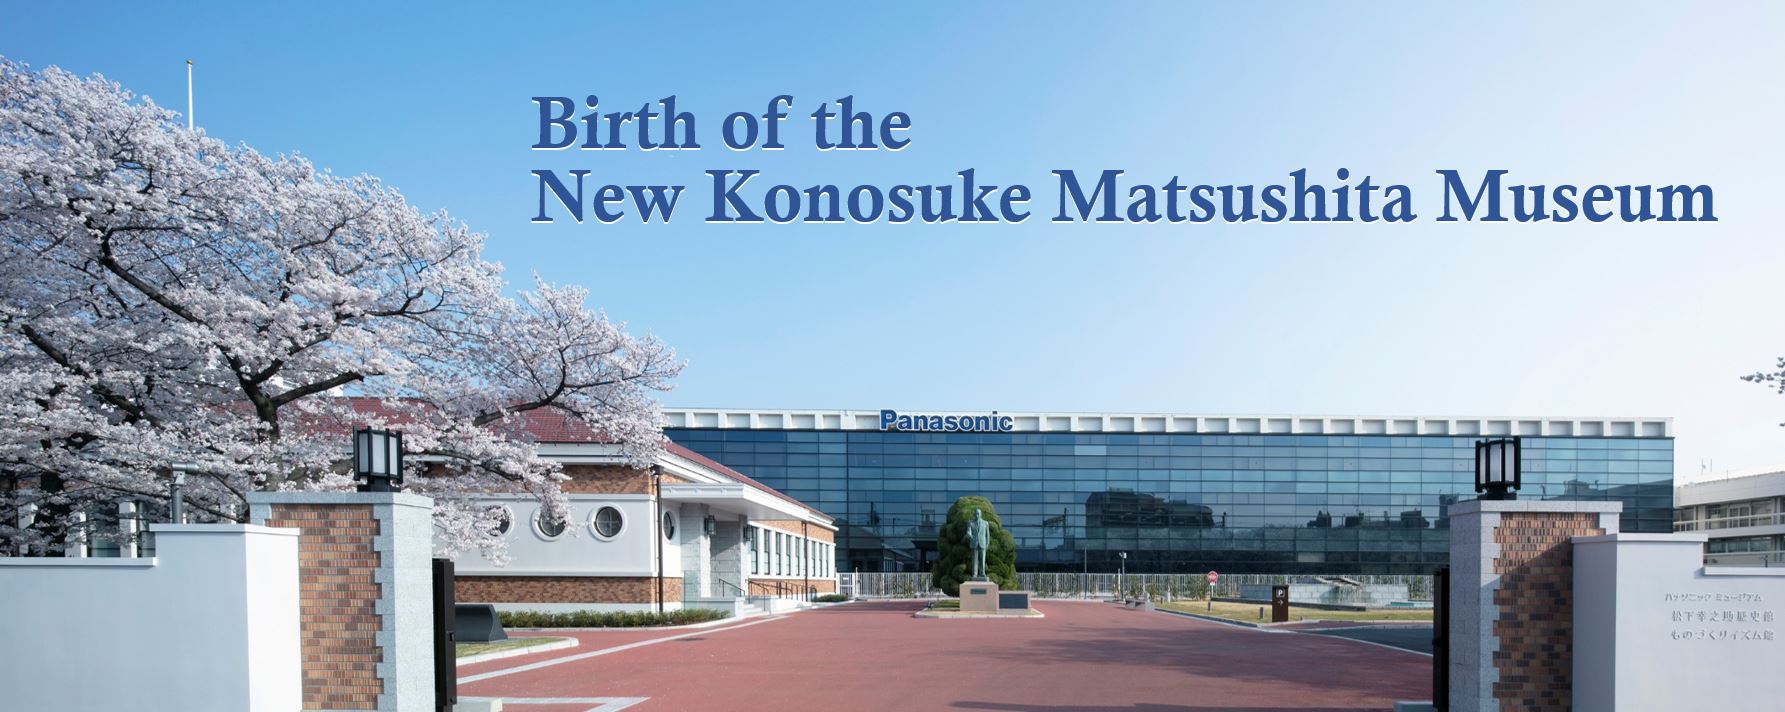 Birth of the New Konosuke Matsushita Museum